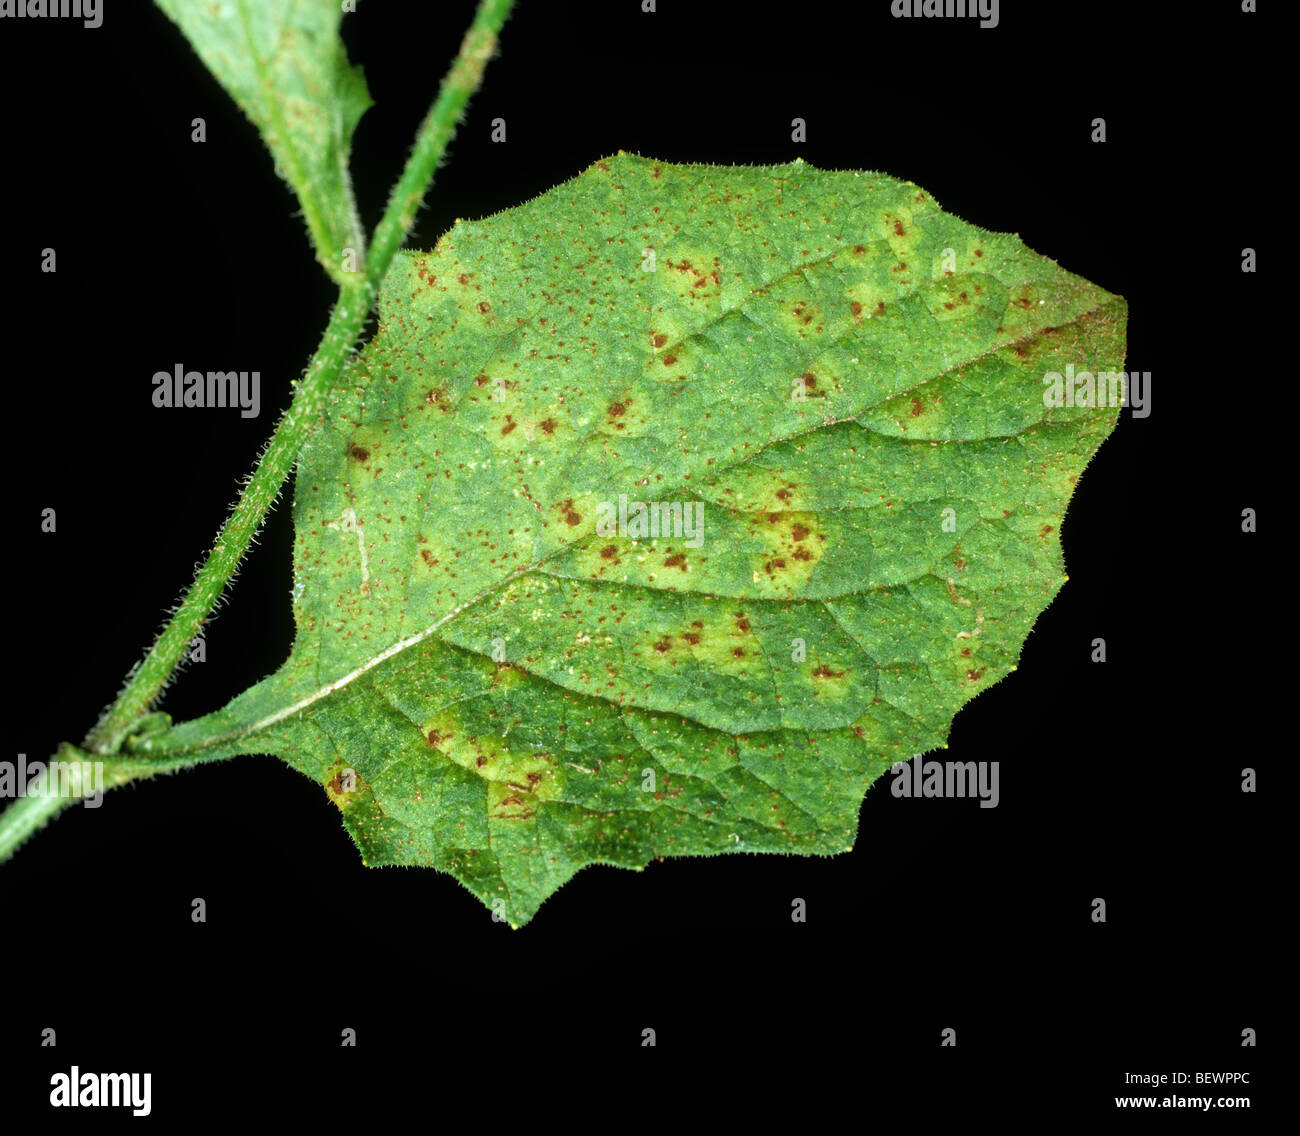 Nipplewort rust (Puccinia lapsanae) on nipplewort (Lapsana communis) leaf Stock Photo